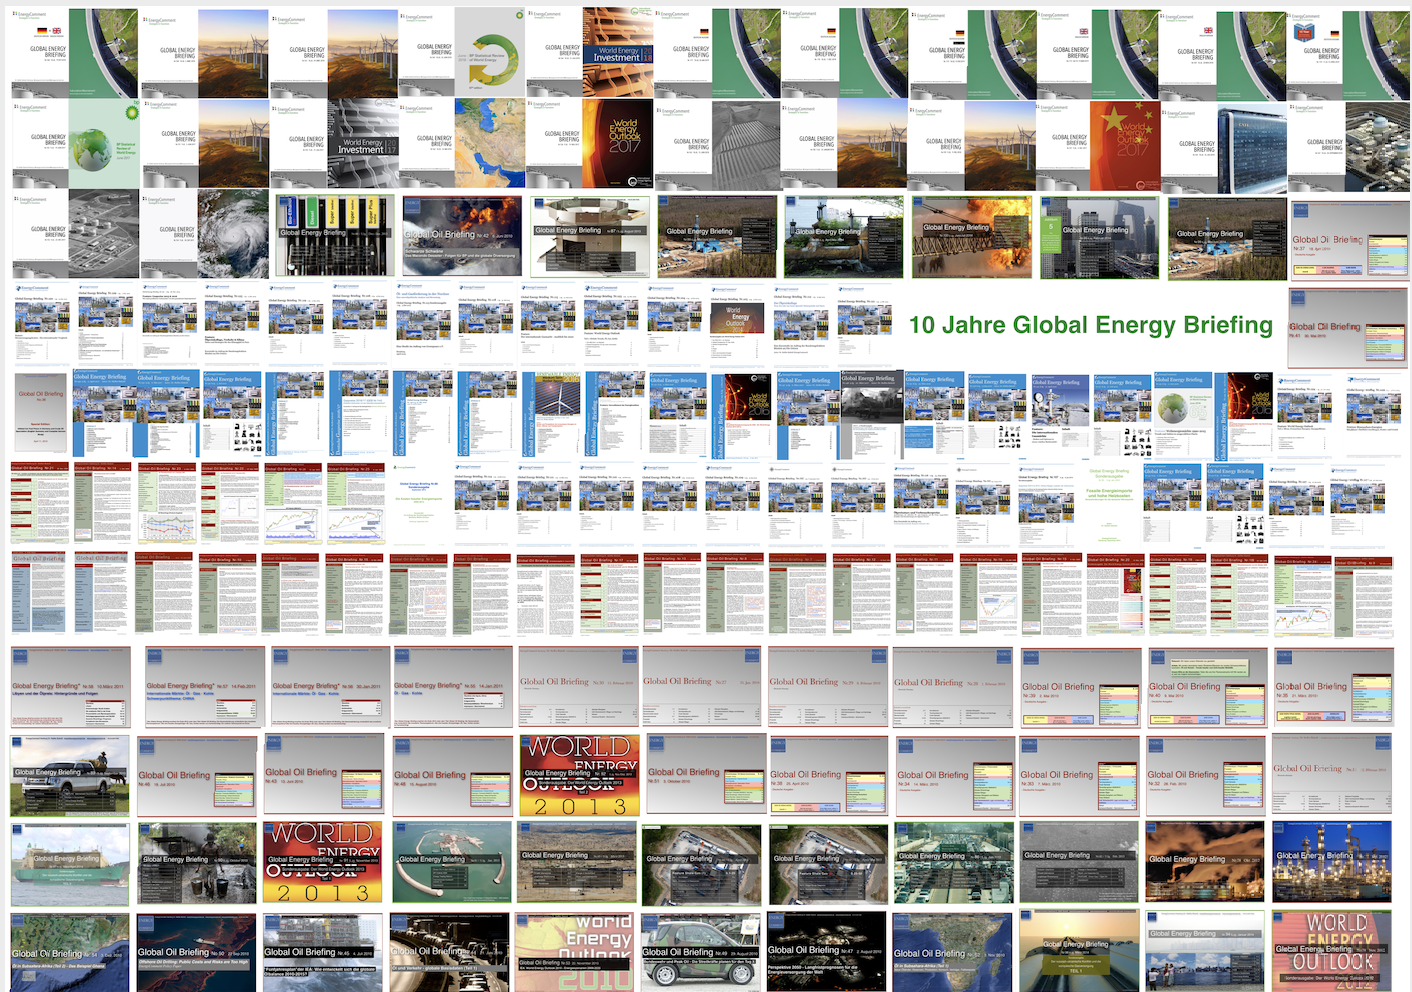 10 Jahre Global Energy Briefing